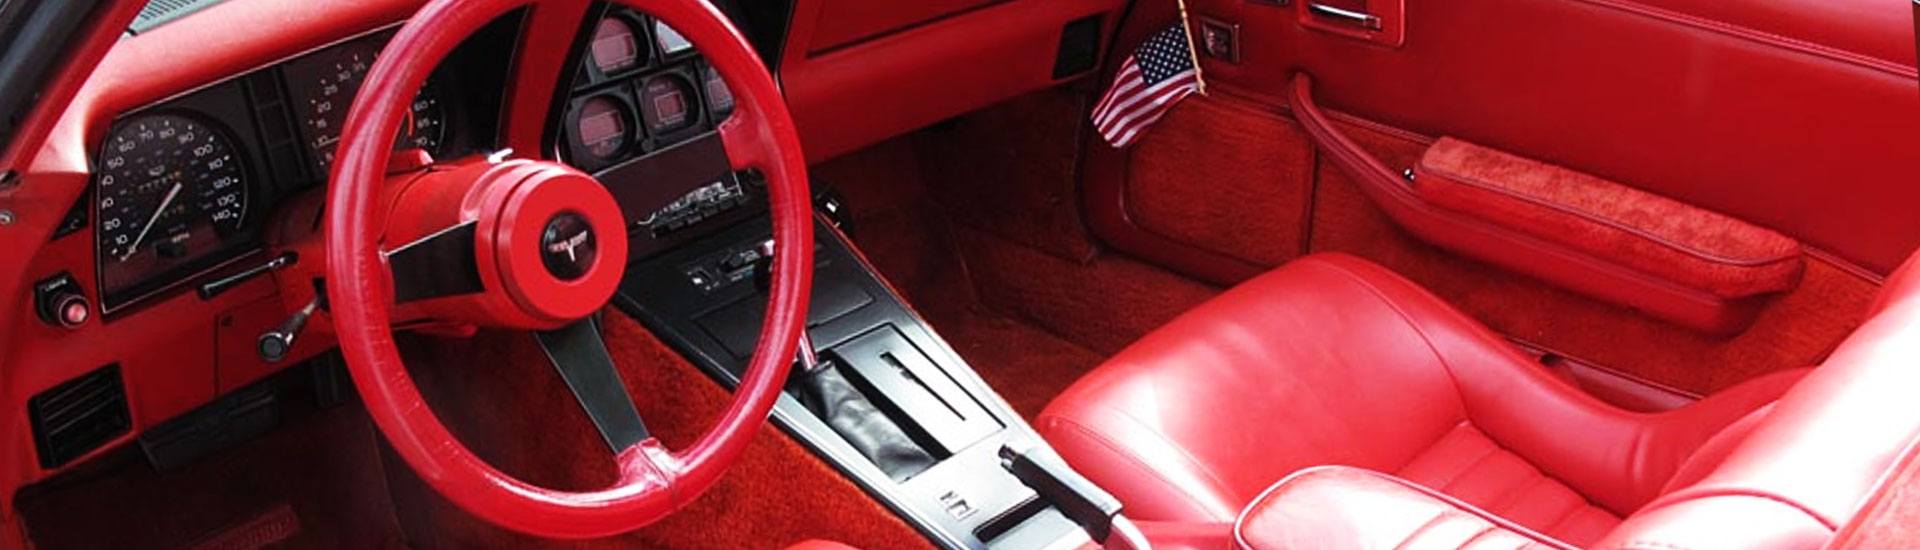 1980 Chevrolet Corvette Dash Kits